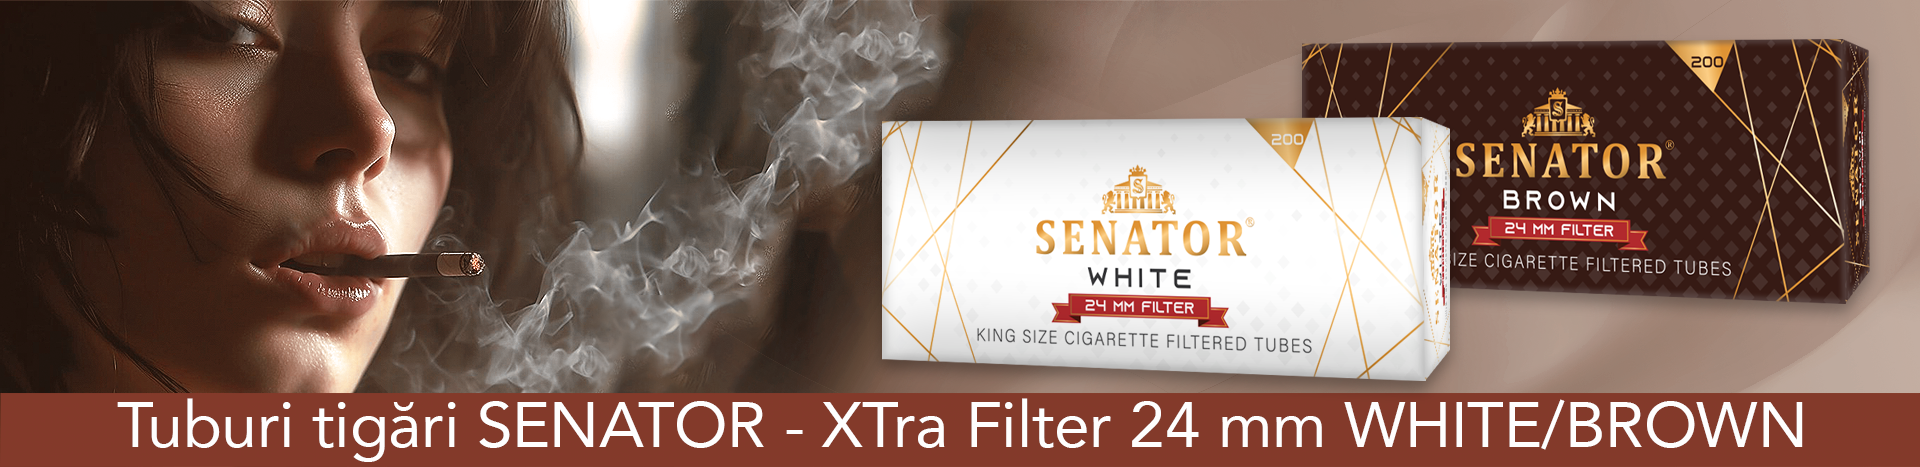 Tuburi tigari SENATOR - XTra Filter 24 mm 